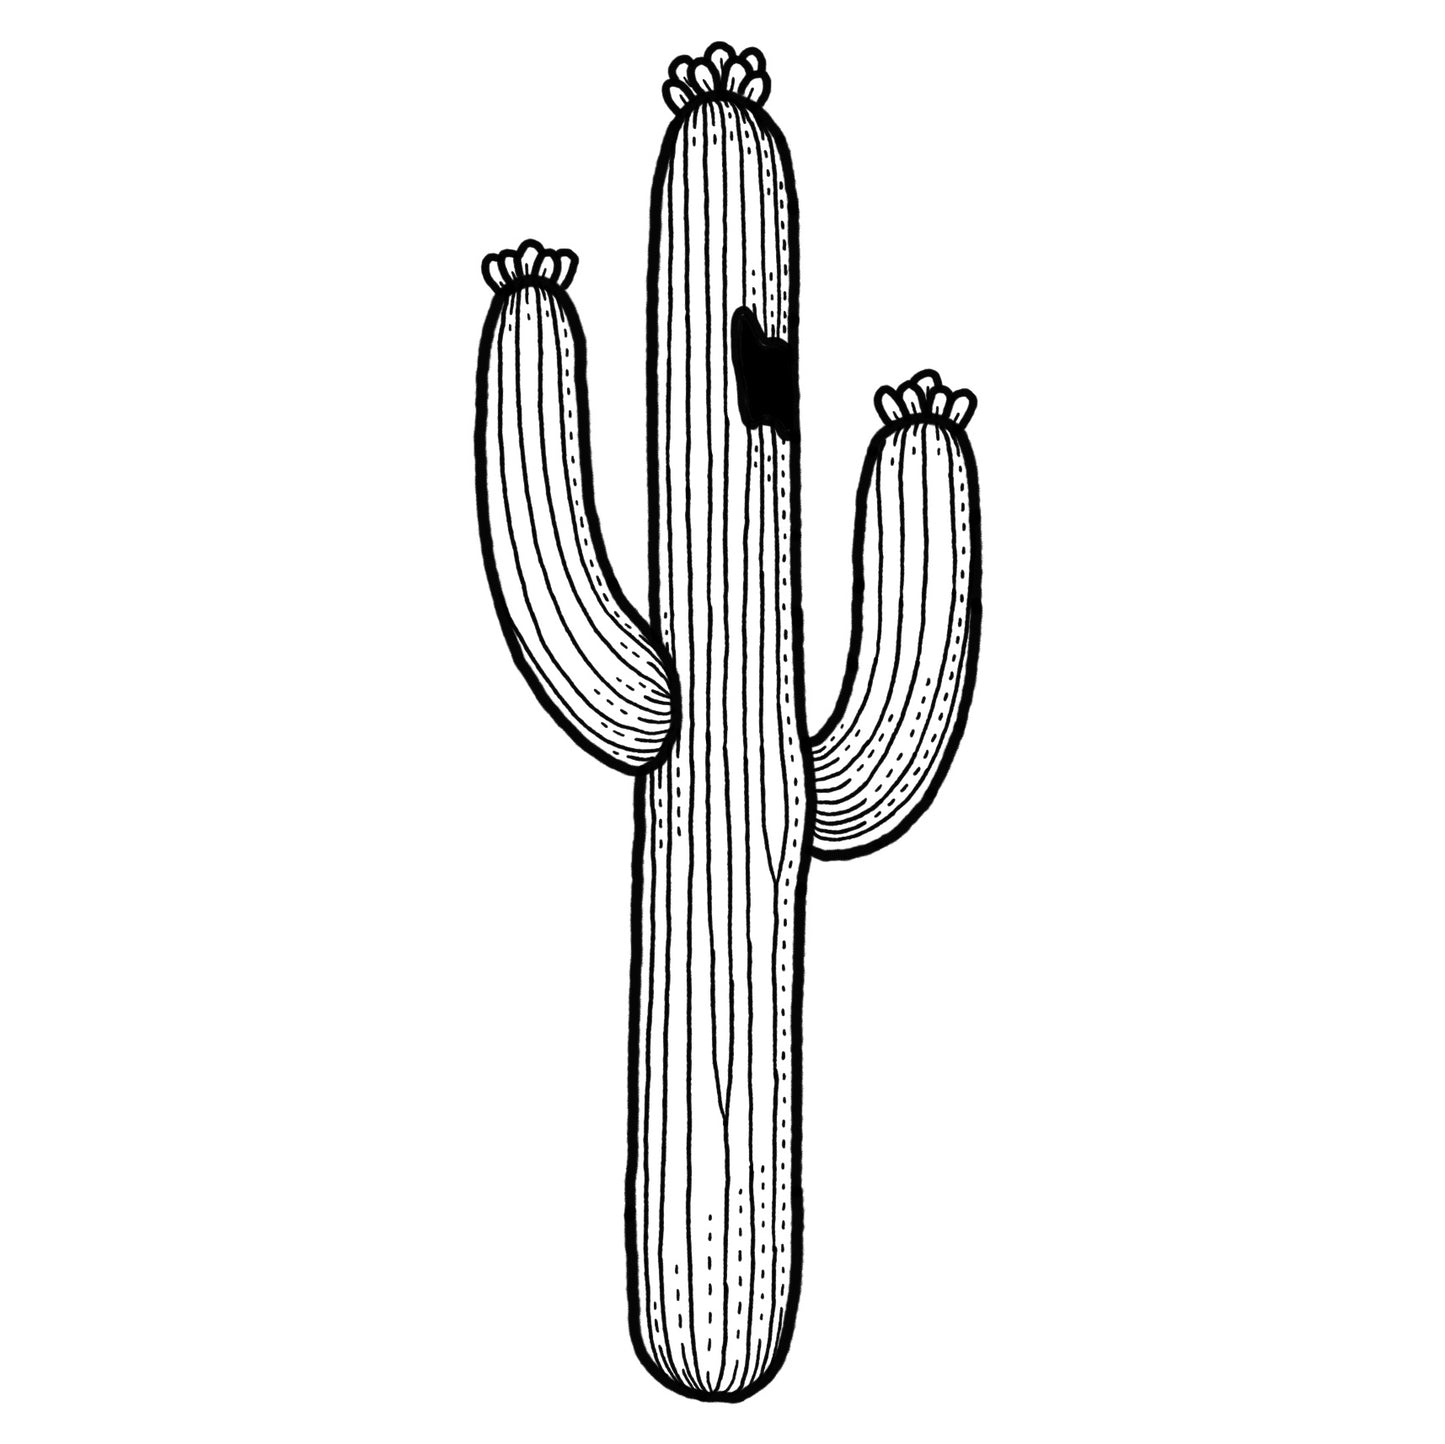 Saguaro 1